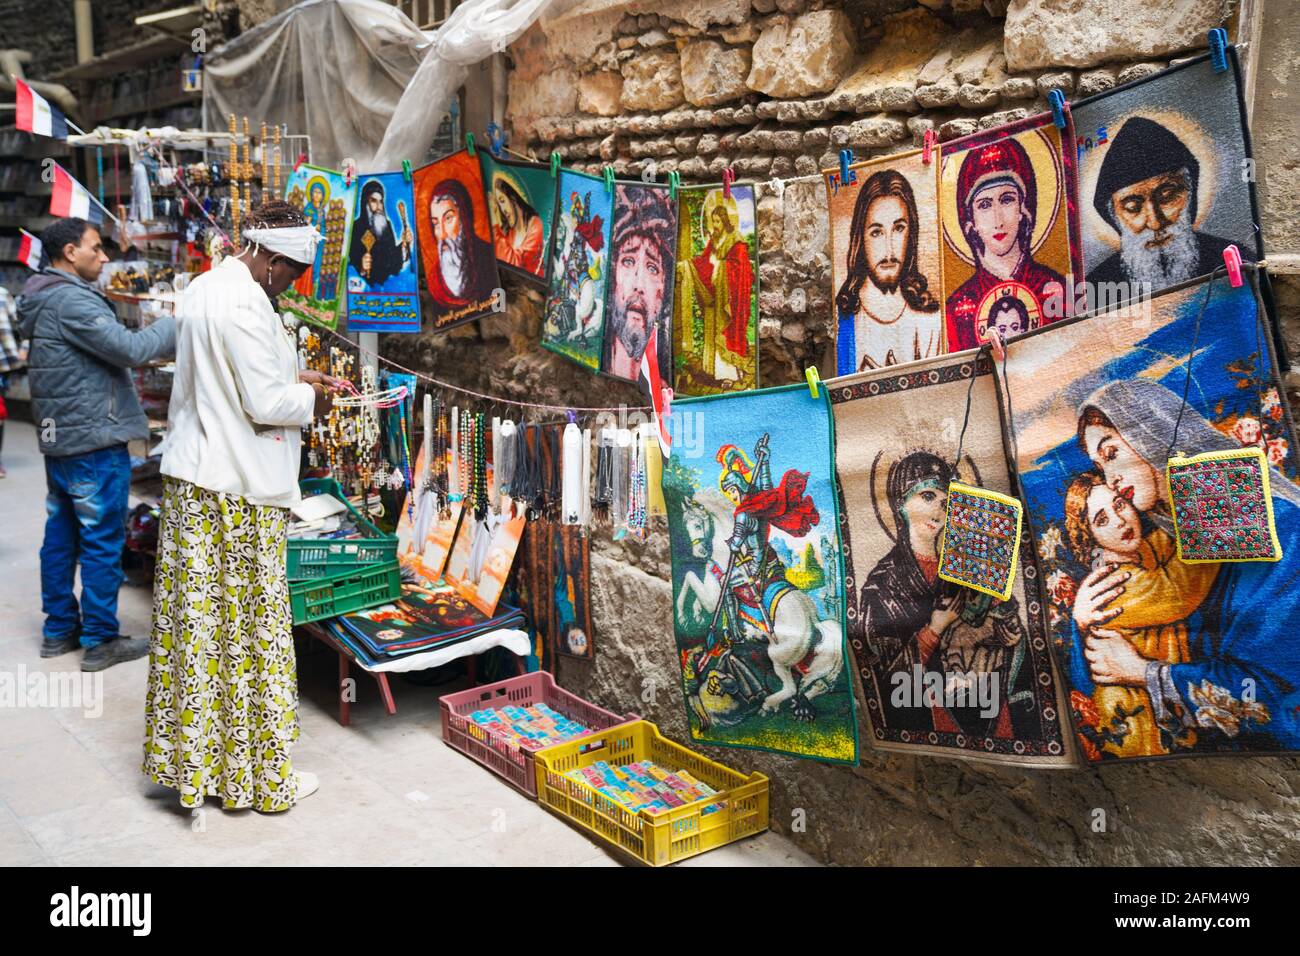 Dévotion chrétienne articles sont offerts dans une ruelle dans la vieille ville du Caire copte, Egypte Banque D'Images